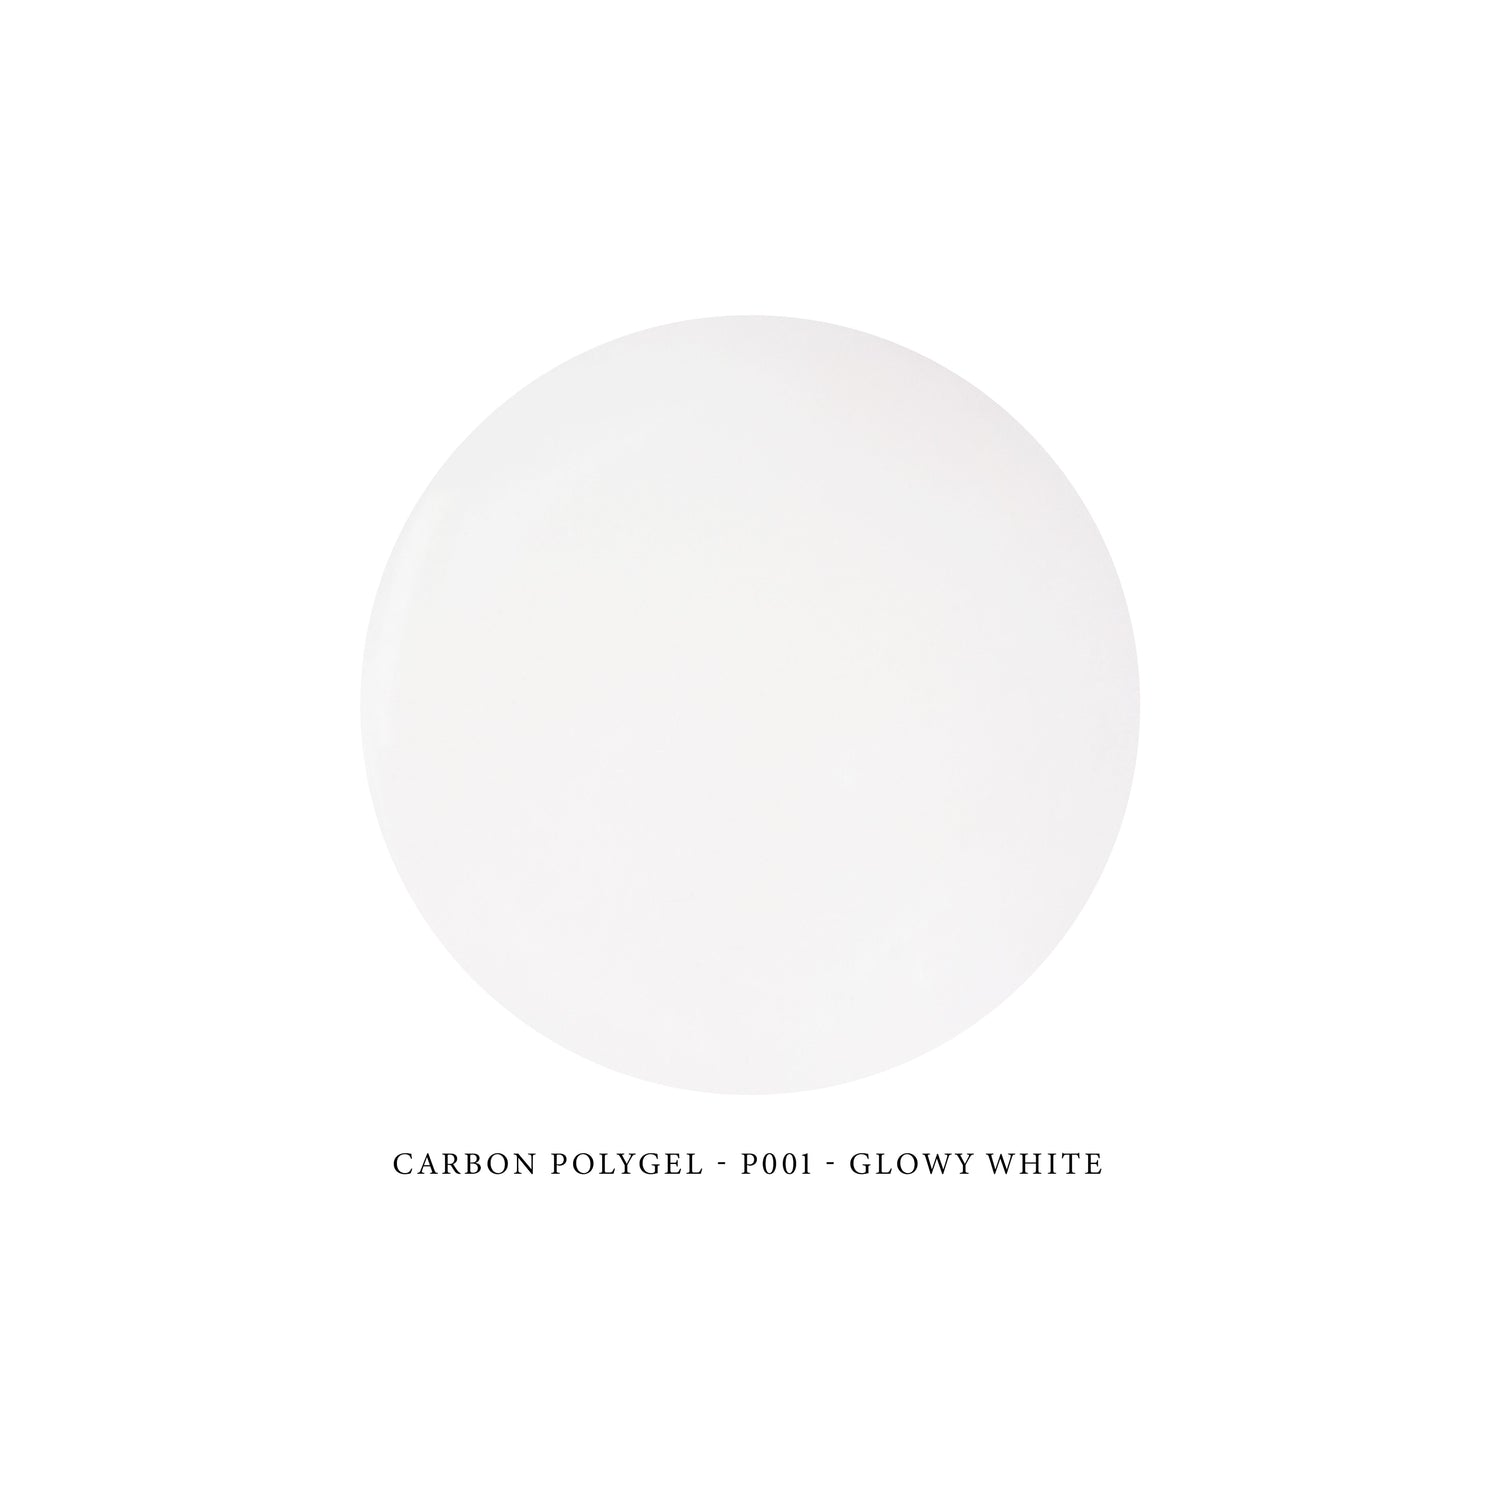 Carbon Polygel P001 - GLOWY WHITE 30g